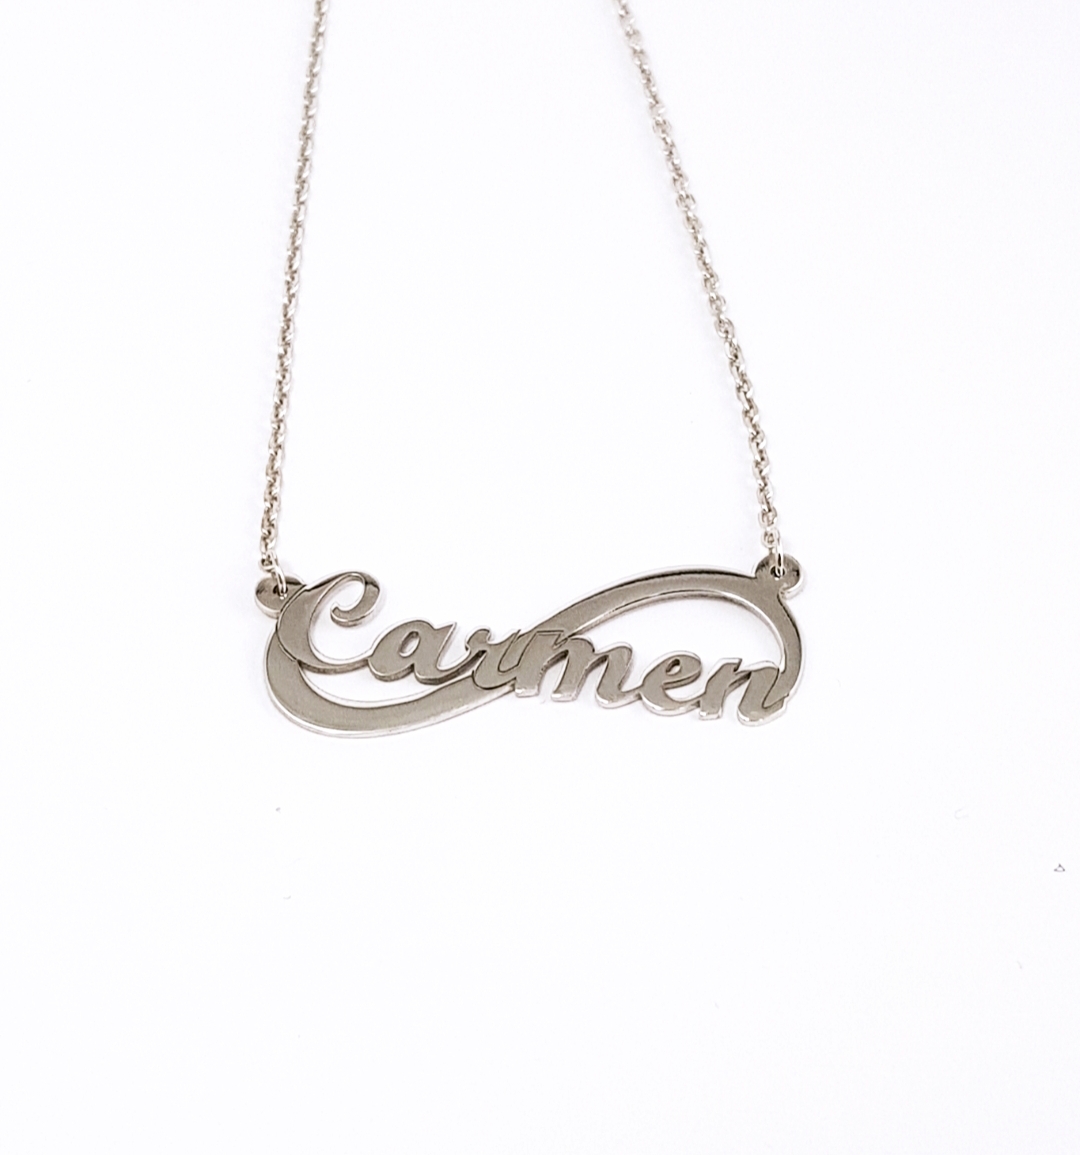 colateral gemelo Esperar Collar de plata y símbolo infinito personalizado con nombre para mujer.